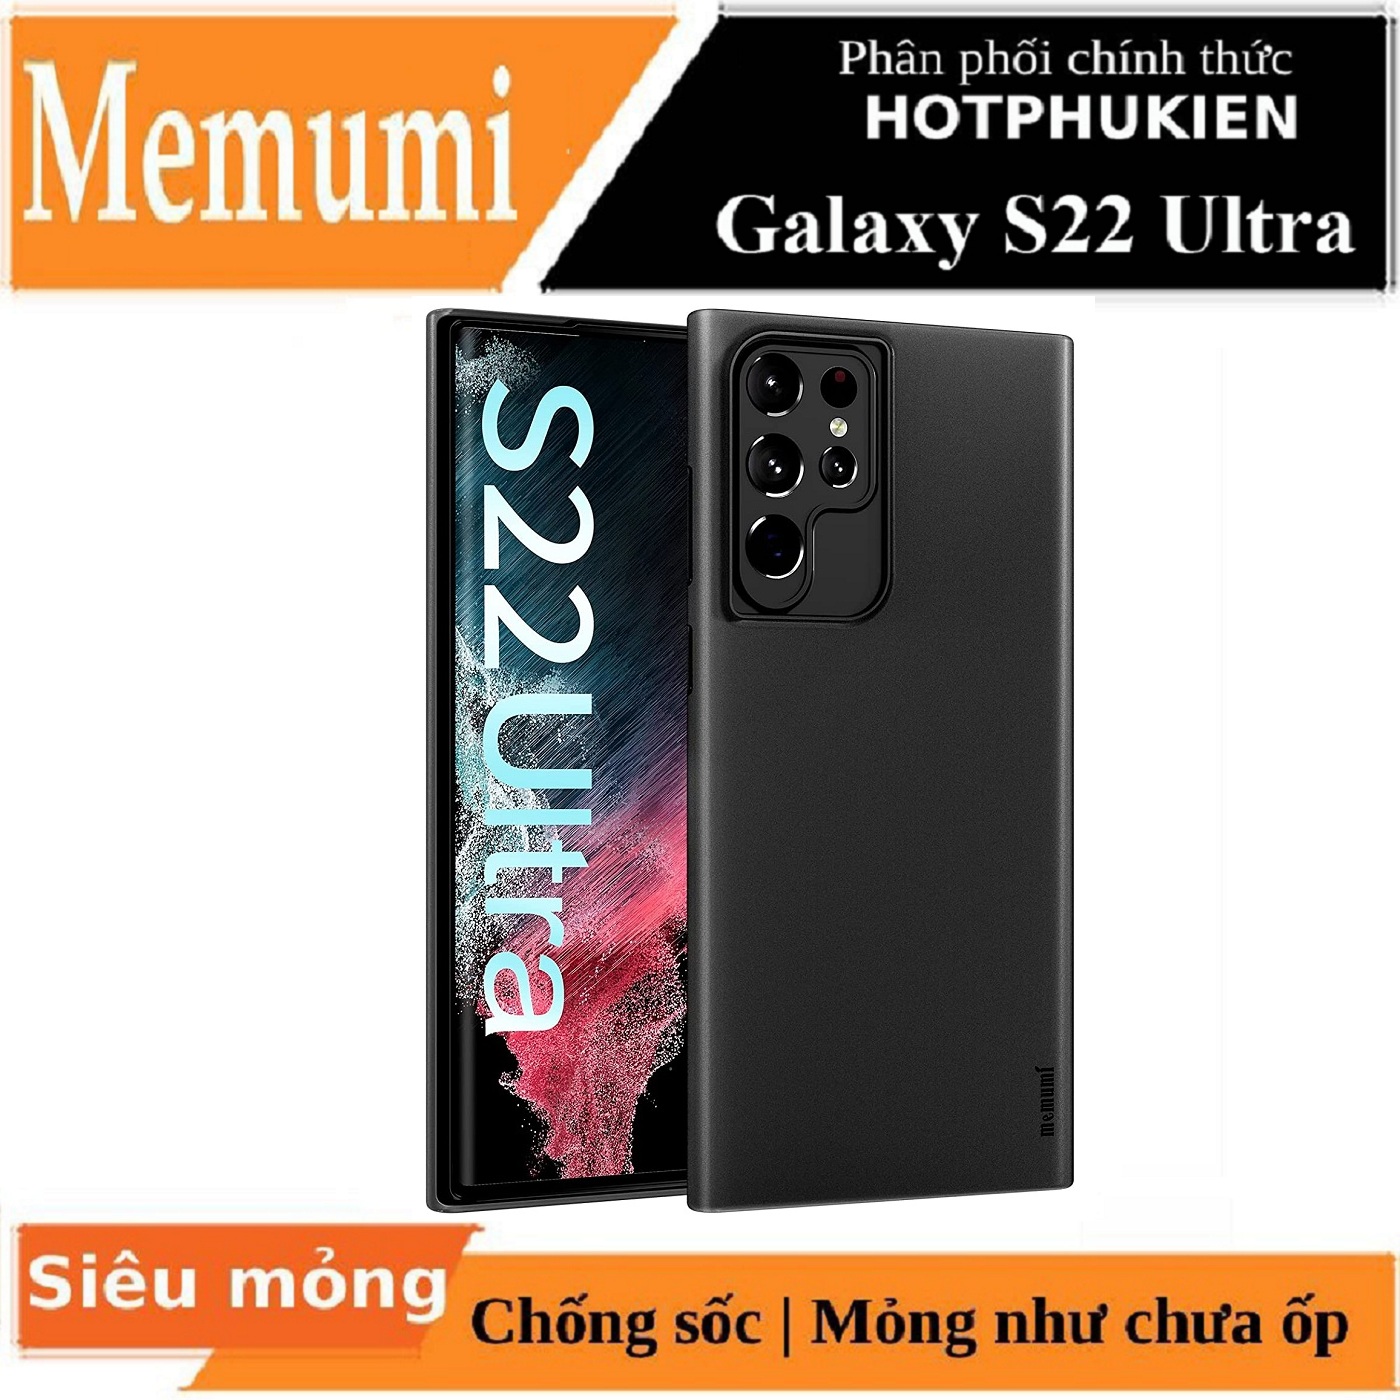 Ốp lưng nhám chống sốc siêu mỏng 0.3mm cho Samsung Galaxy S22 Ultra hiệu Memumi